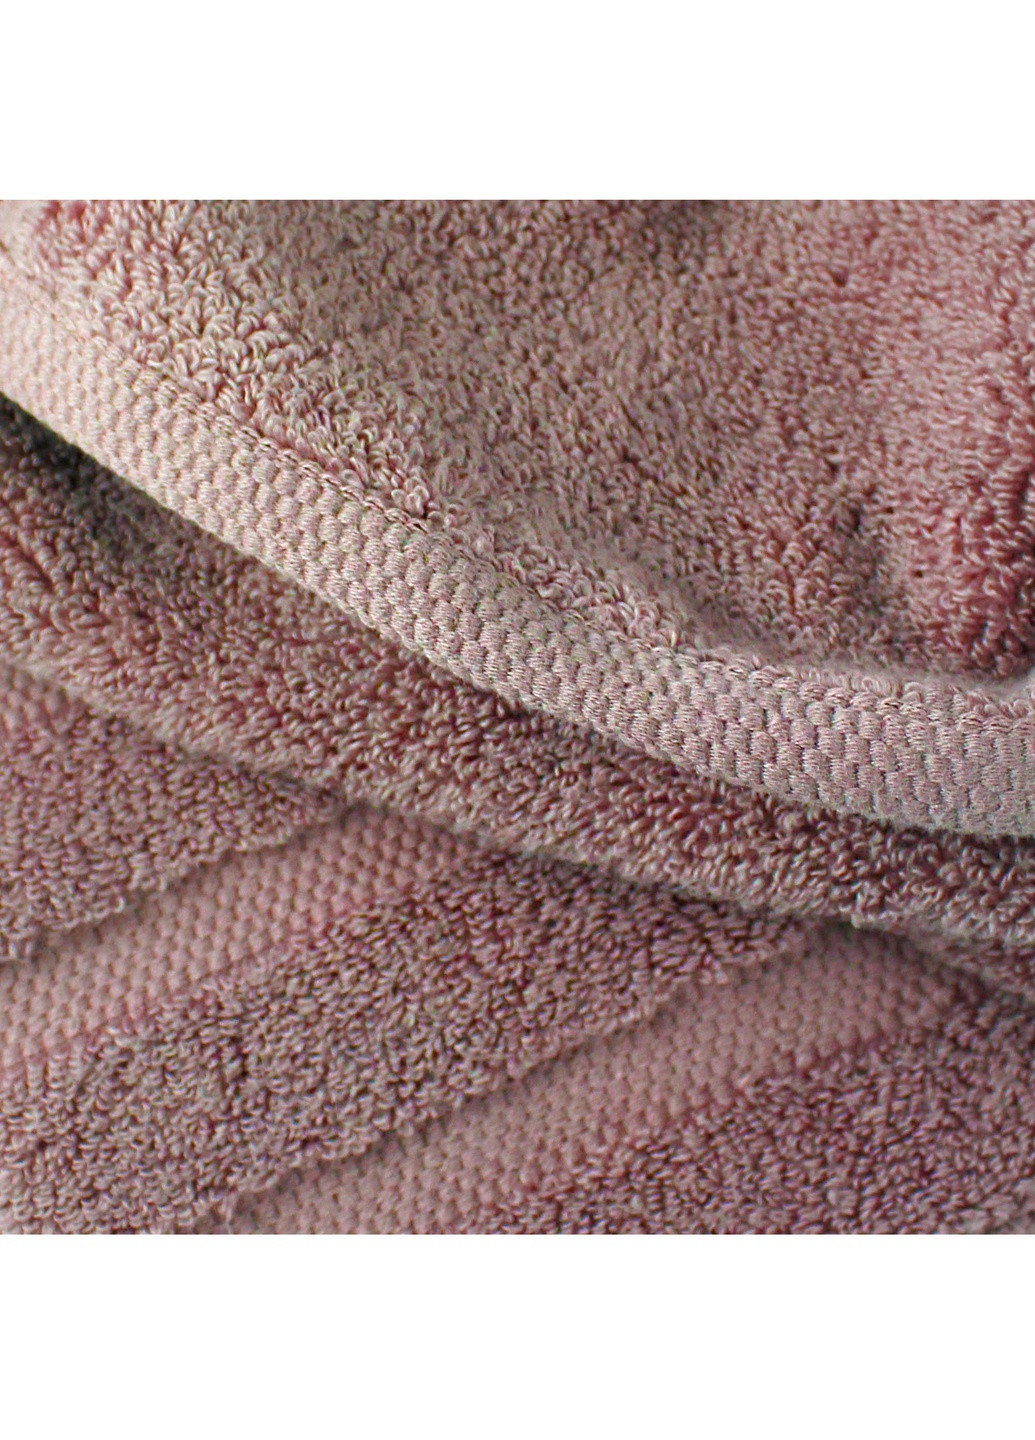 Bulgaria-Tex полотенце махровое oslo, microcotton, жаккардовое, с бордюром, пепел розы, размер 70x140 см темно-розовый производство - Болгария